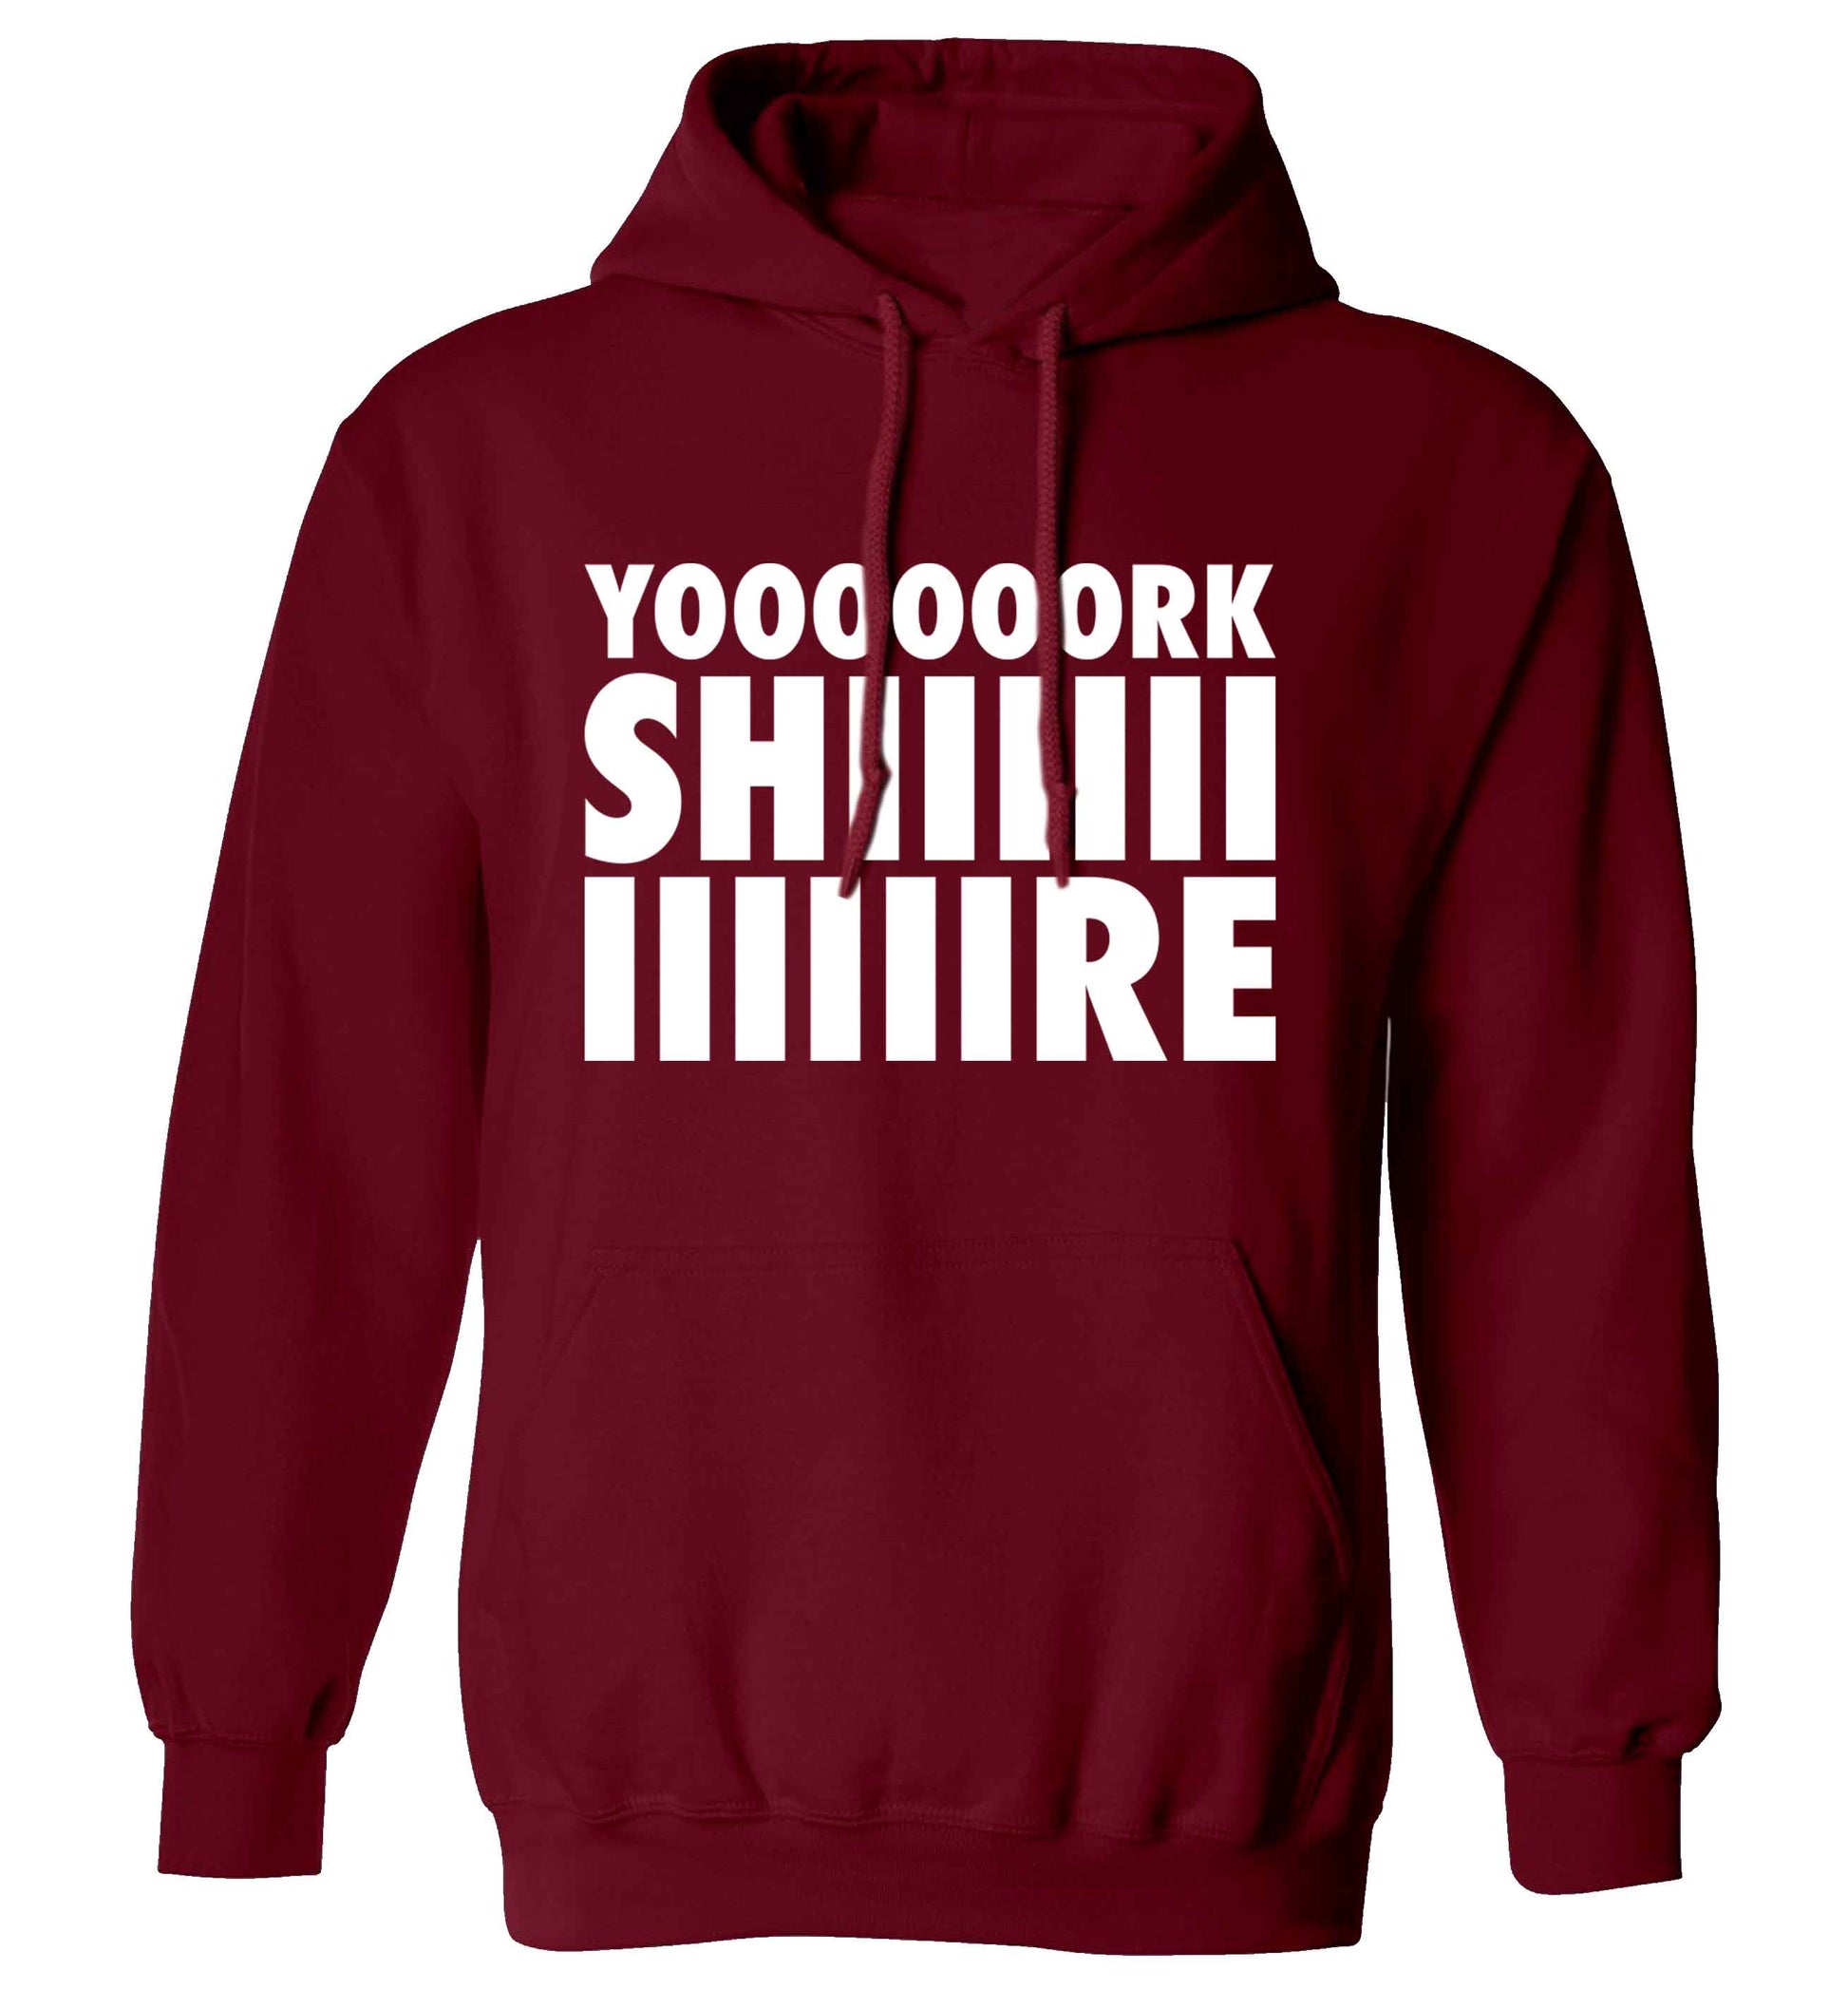 Yoooorkshiiiiire adults unisex maroon hoodie 2XL